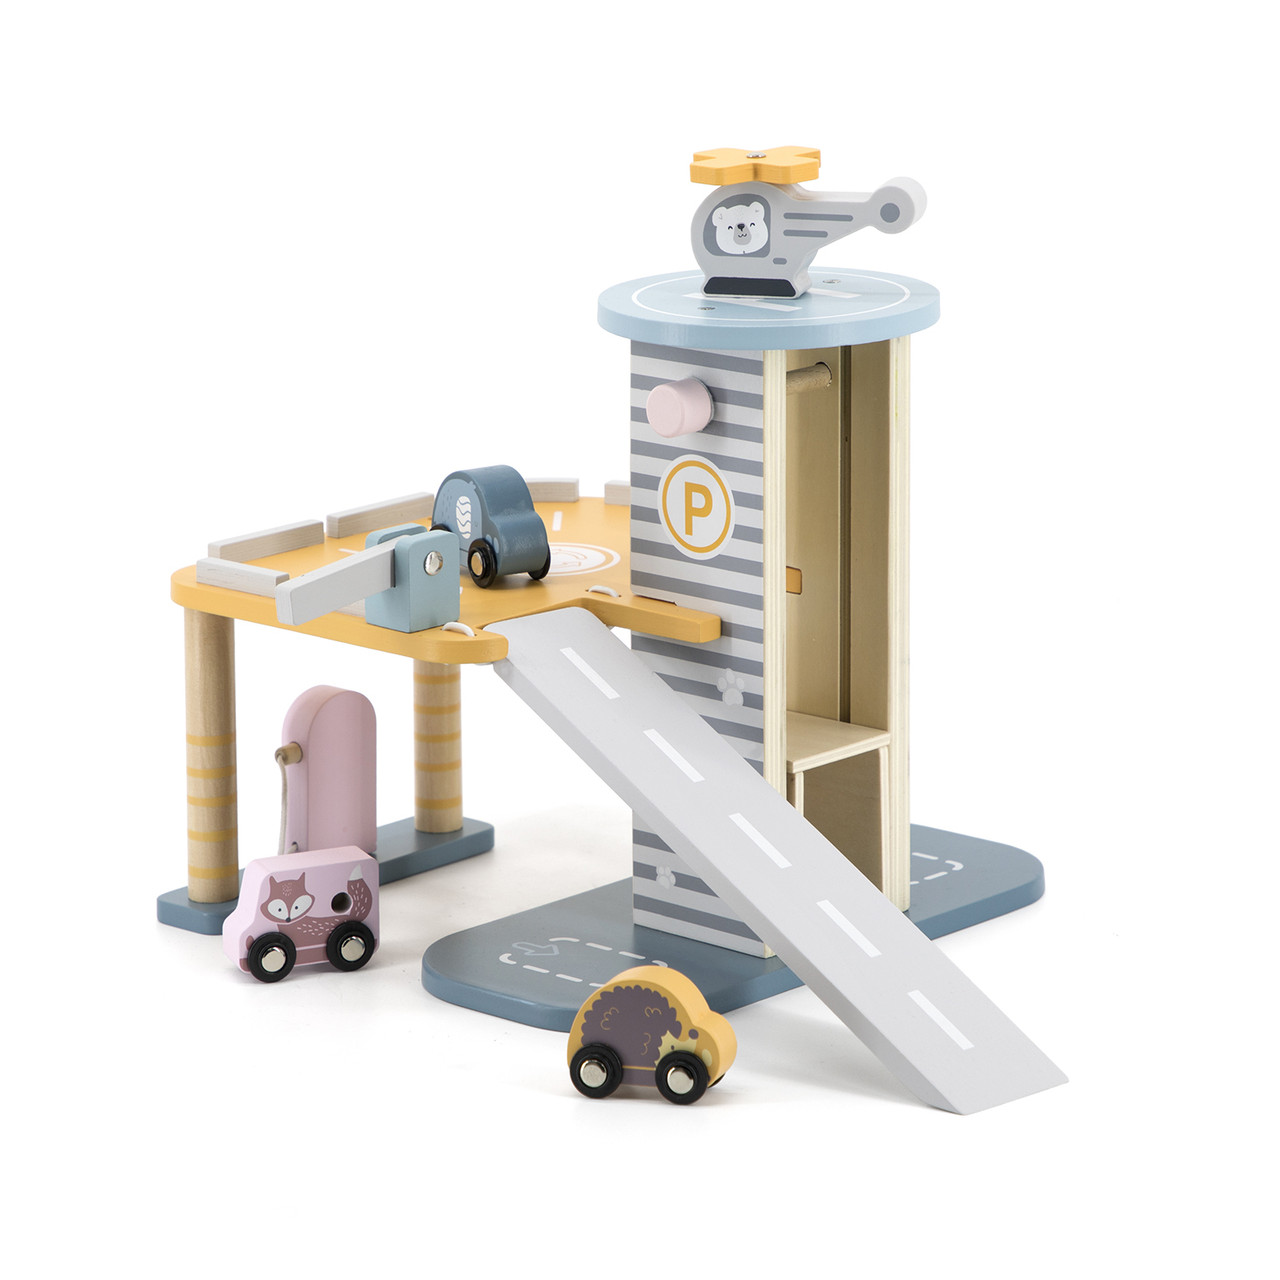 Дитяча іграшка: Паркінг та гараж з гелікоптером. Іграшка для дітей з дерева. Розвиваючі та навчальні іграшки для дітей.